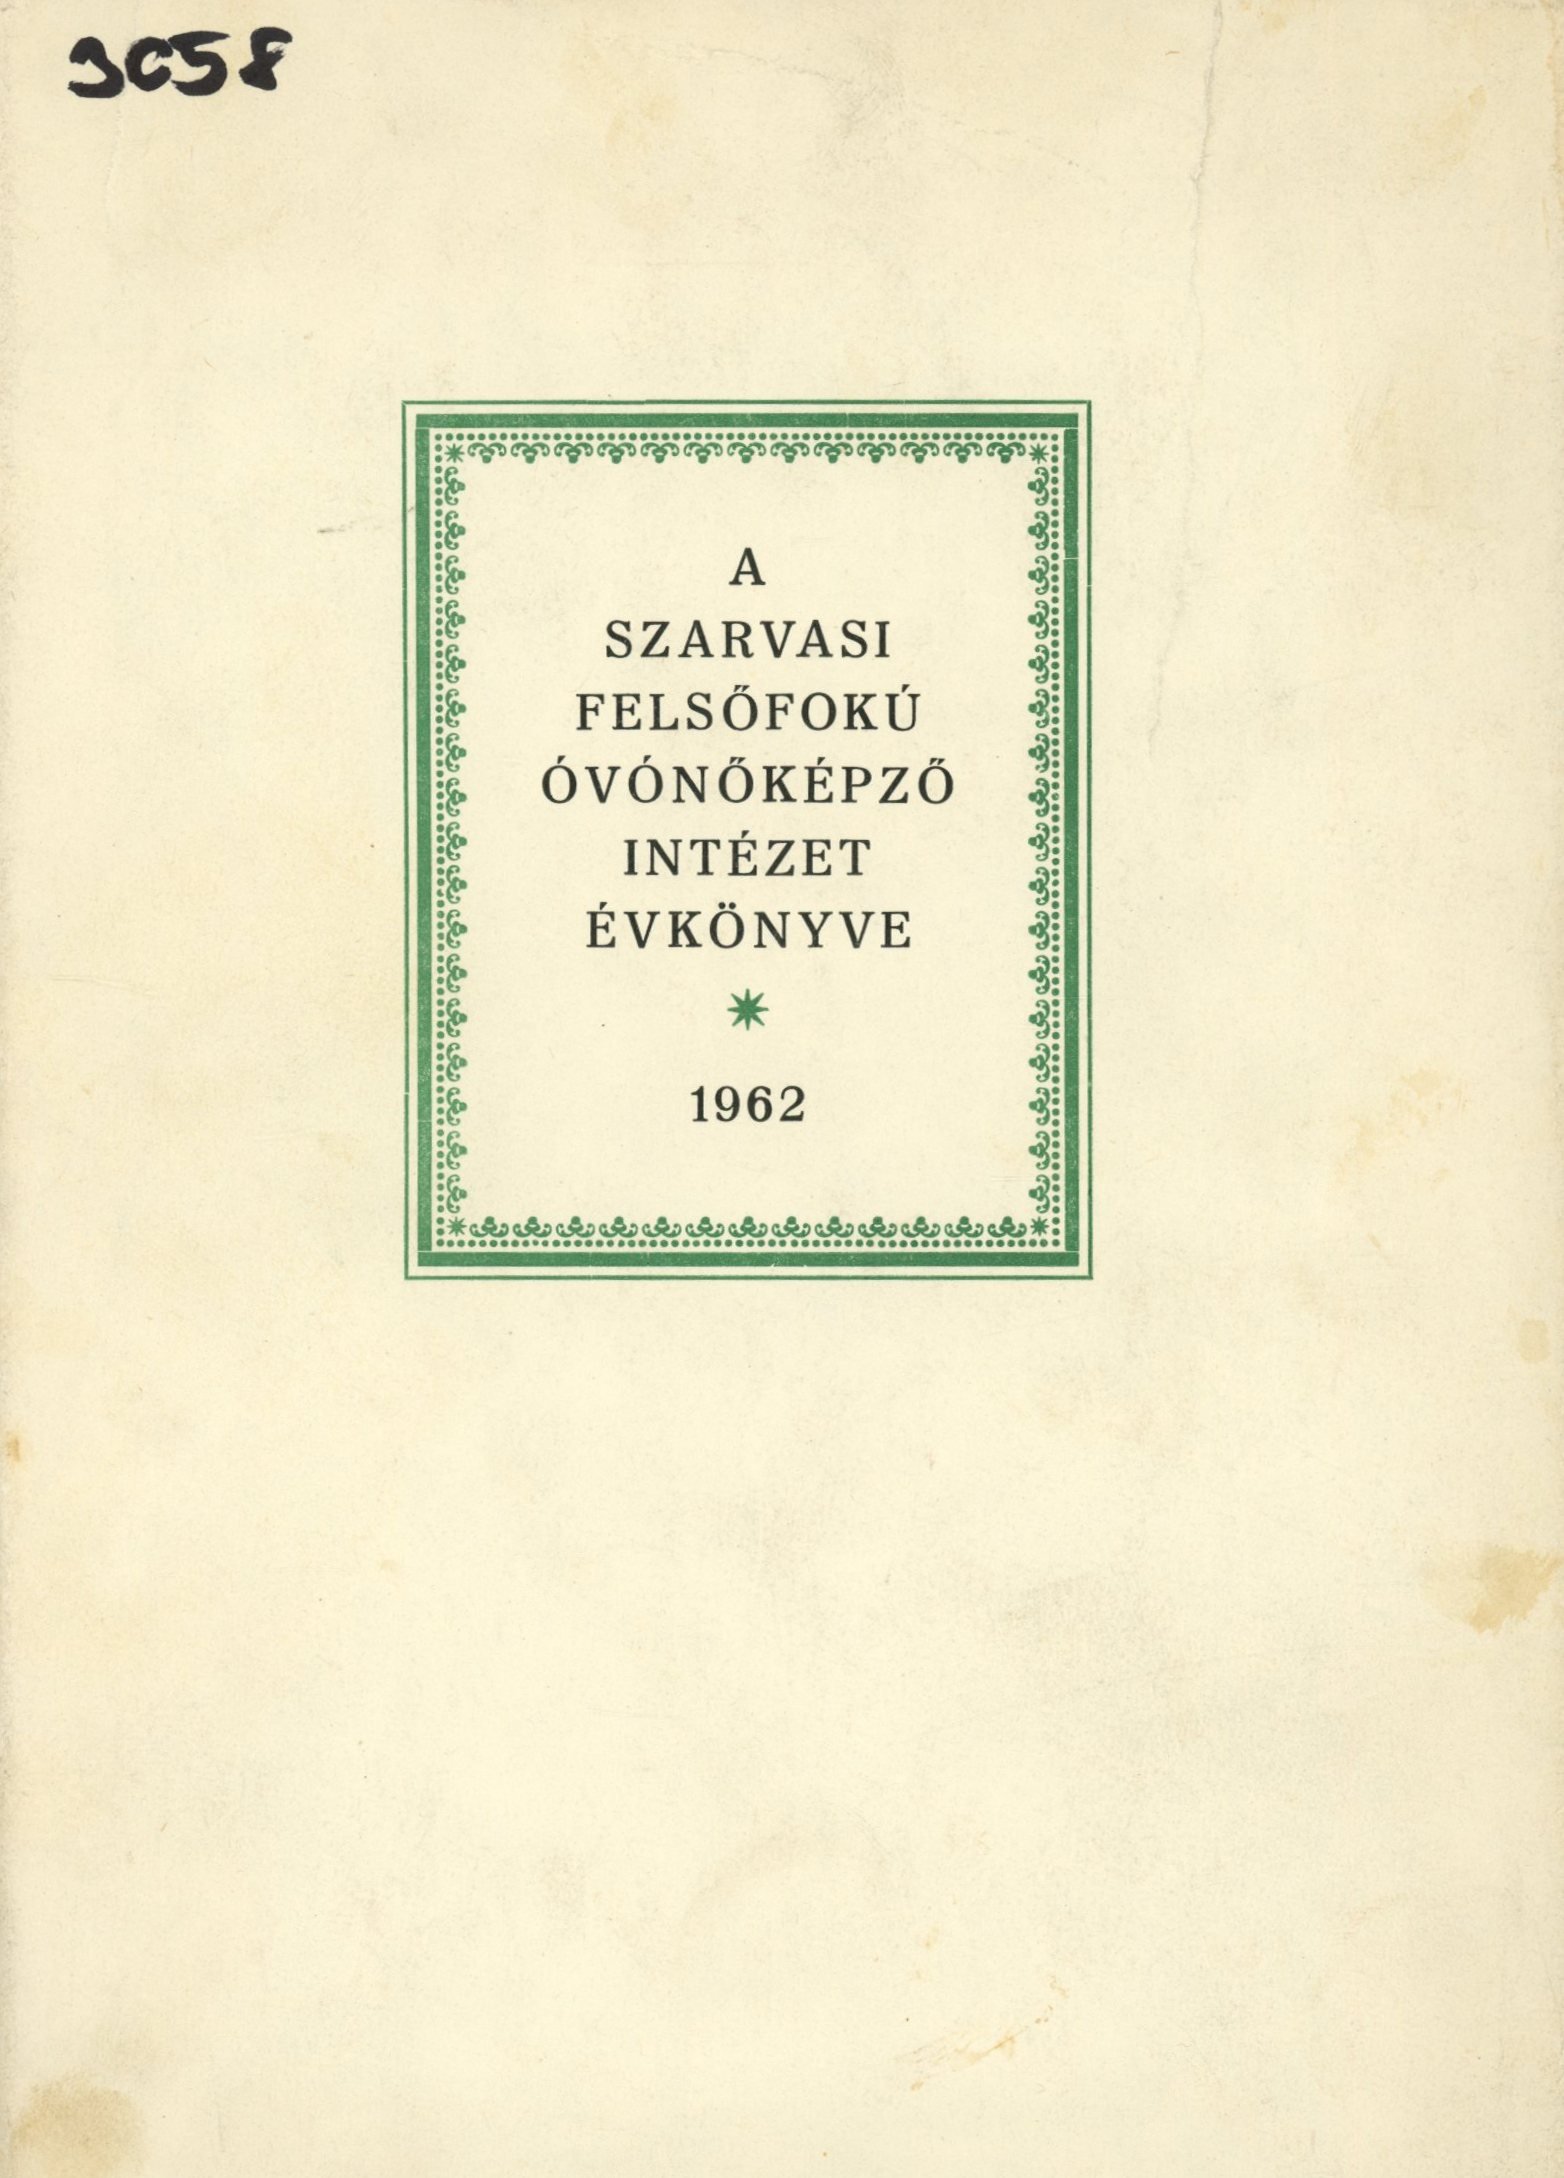 A Szarvasi Felsőfokú Óvónőképző Intézet Évkönyve 1962 (Erkel Ferenc Múzeum és Könyvtár, Gyula CC BY-NC-SA)